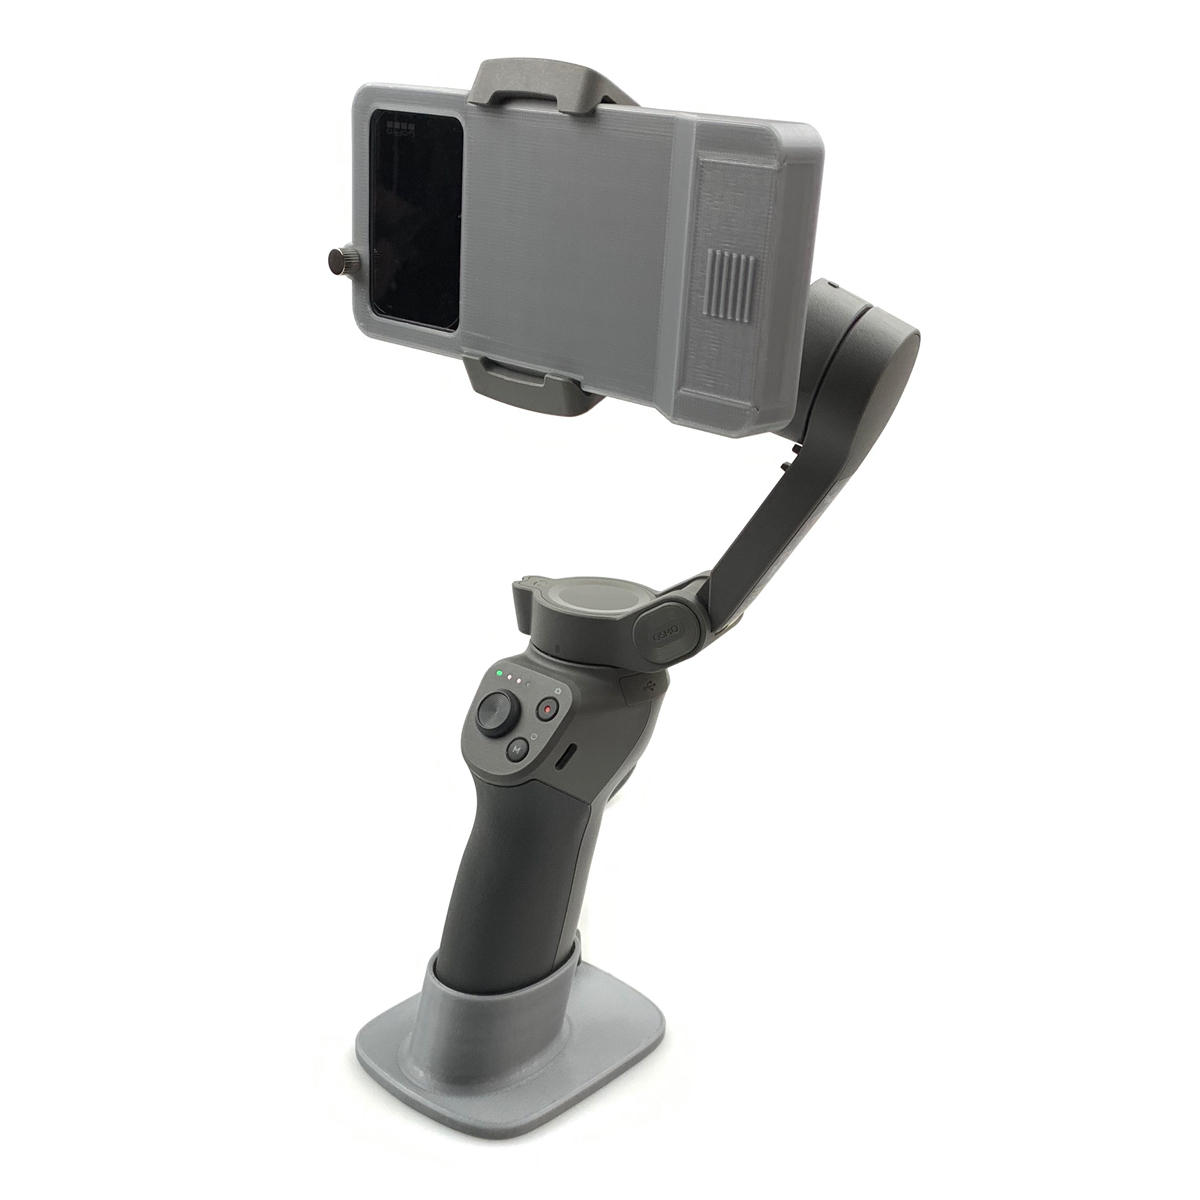 

Camera Adapter Holder Bracket For GoPro Hero 5 6 7 Black for DJI OSMO OM4 Mobile 3 Gimbal Stabilizer